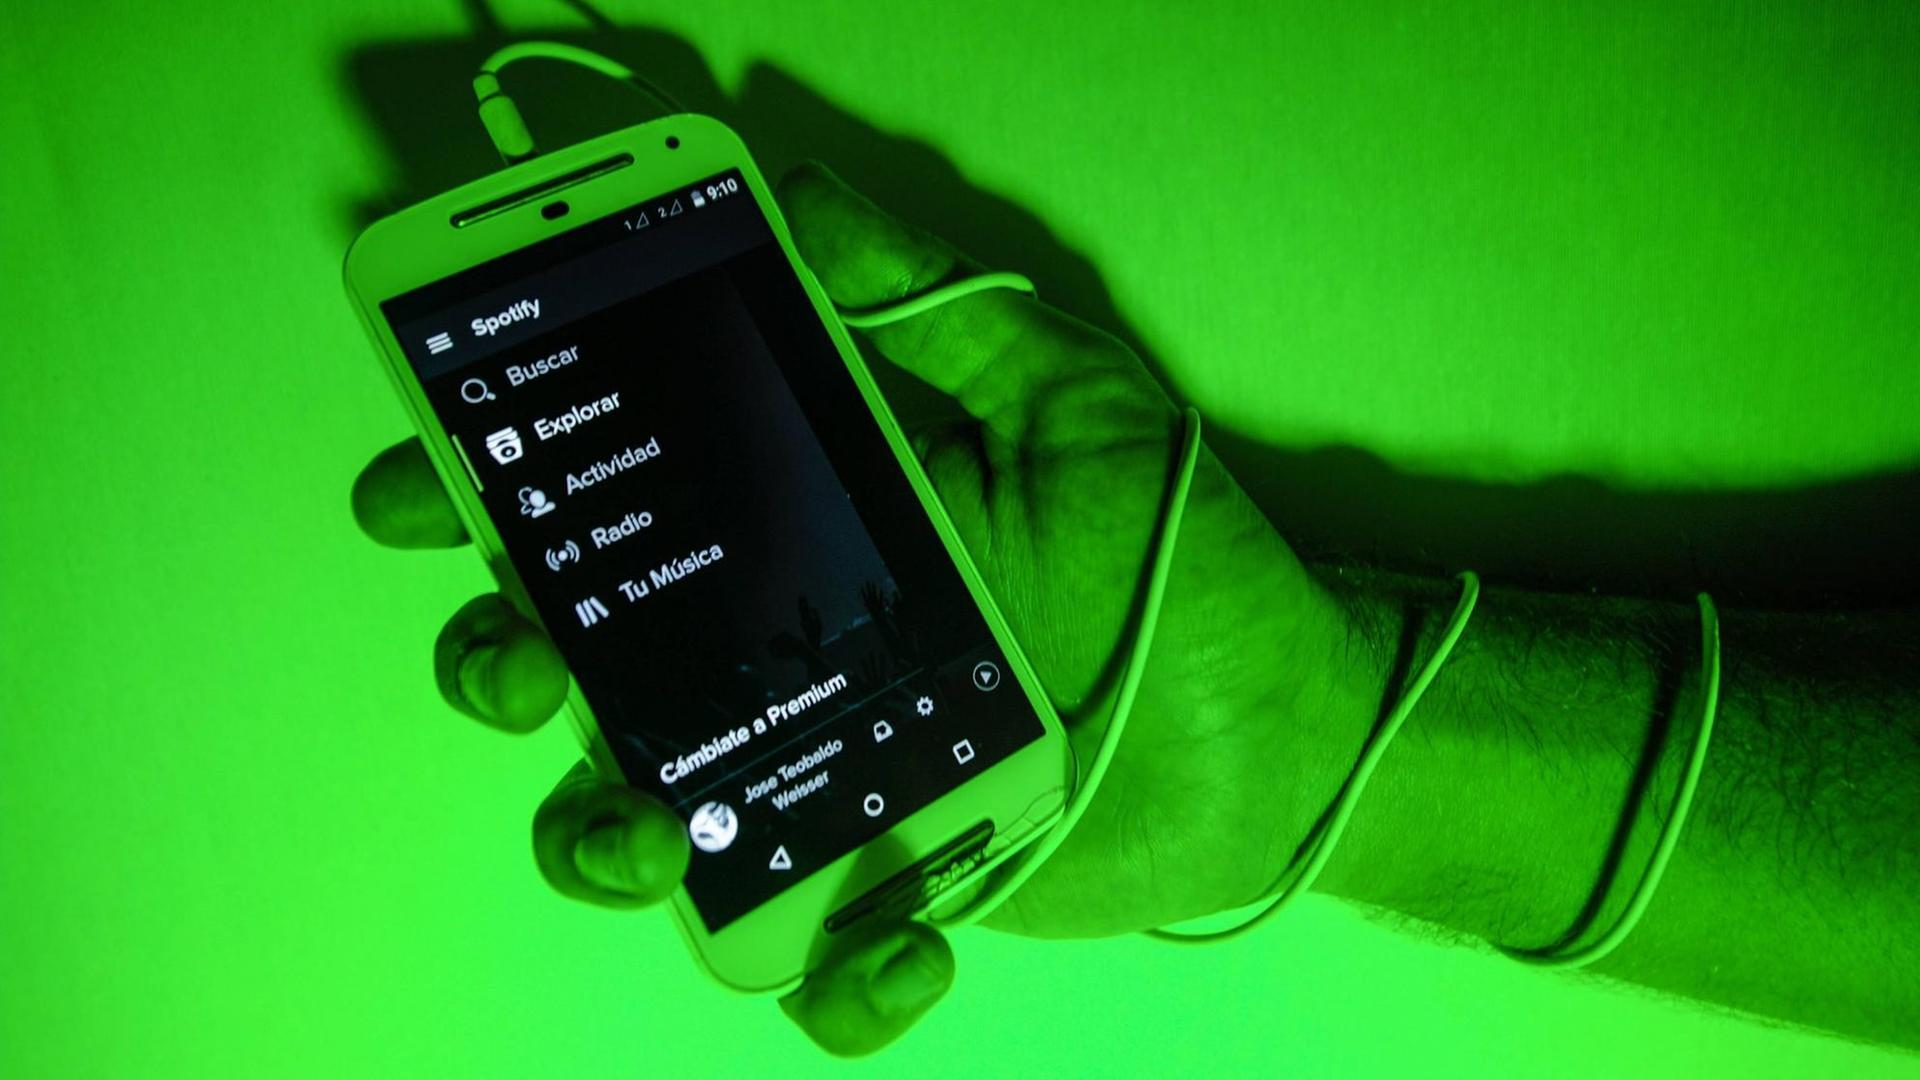 Hand hält Mobiltelefon, die Szene ist in grünes Licht getaucht.